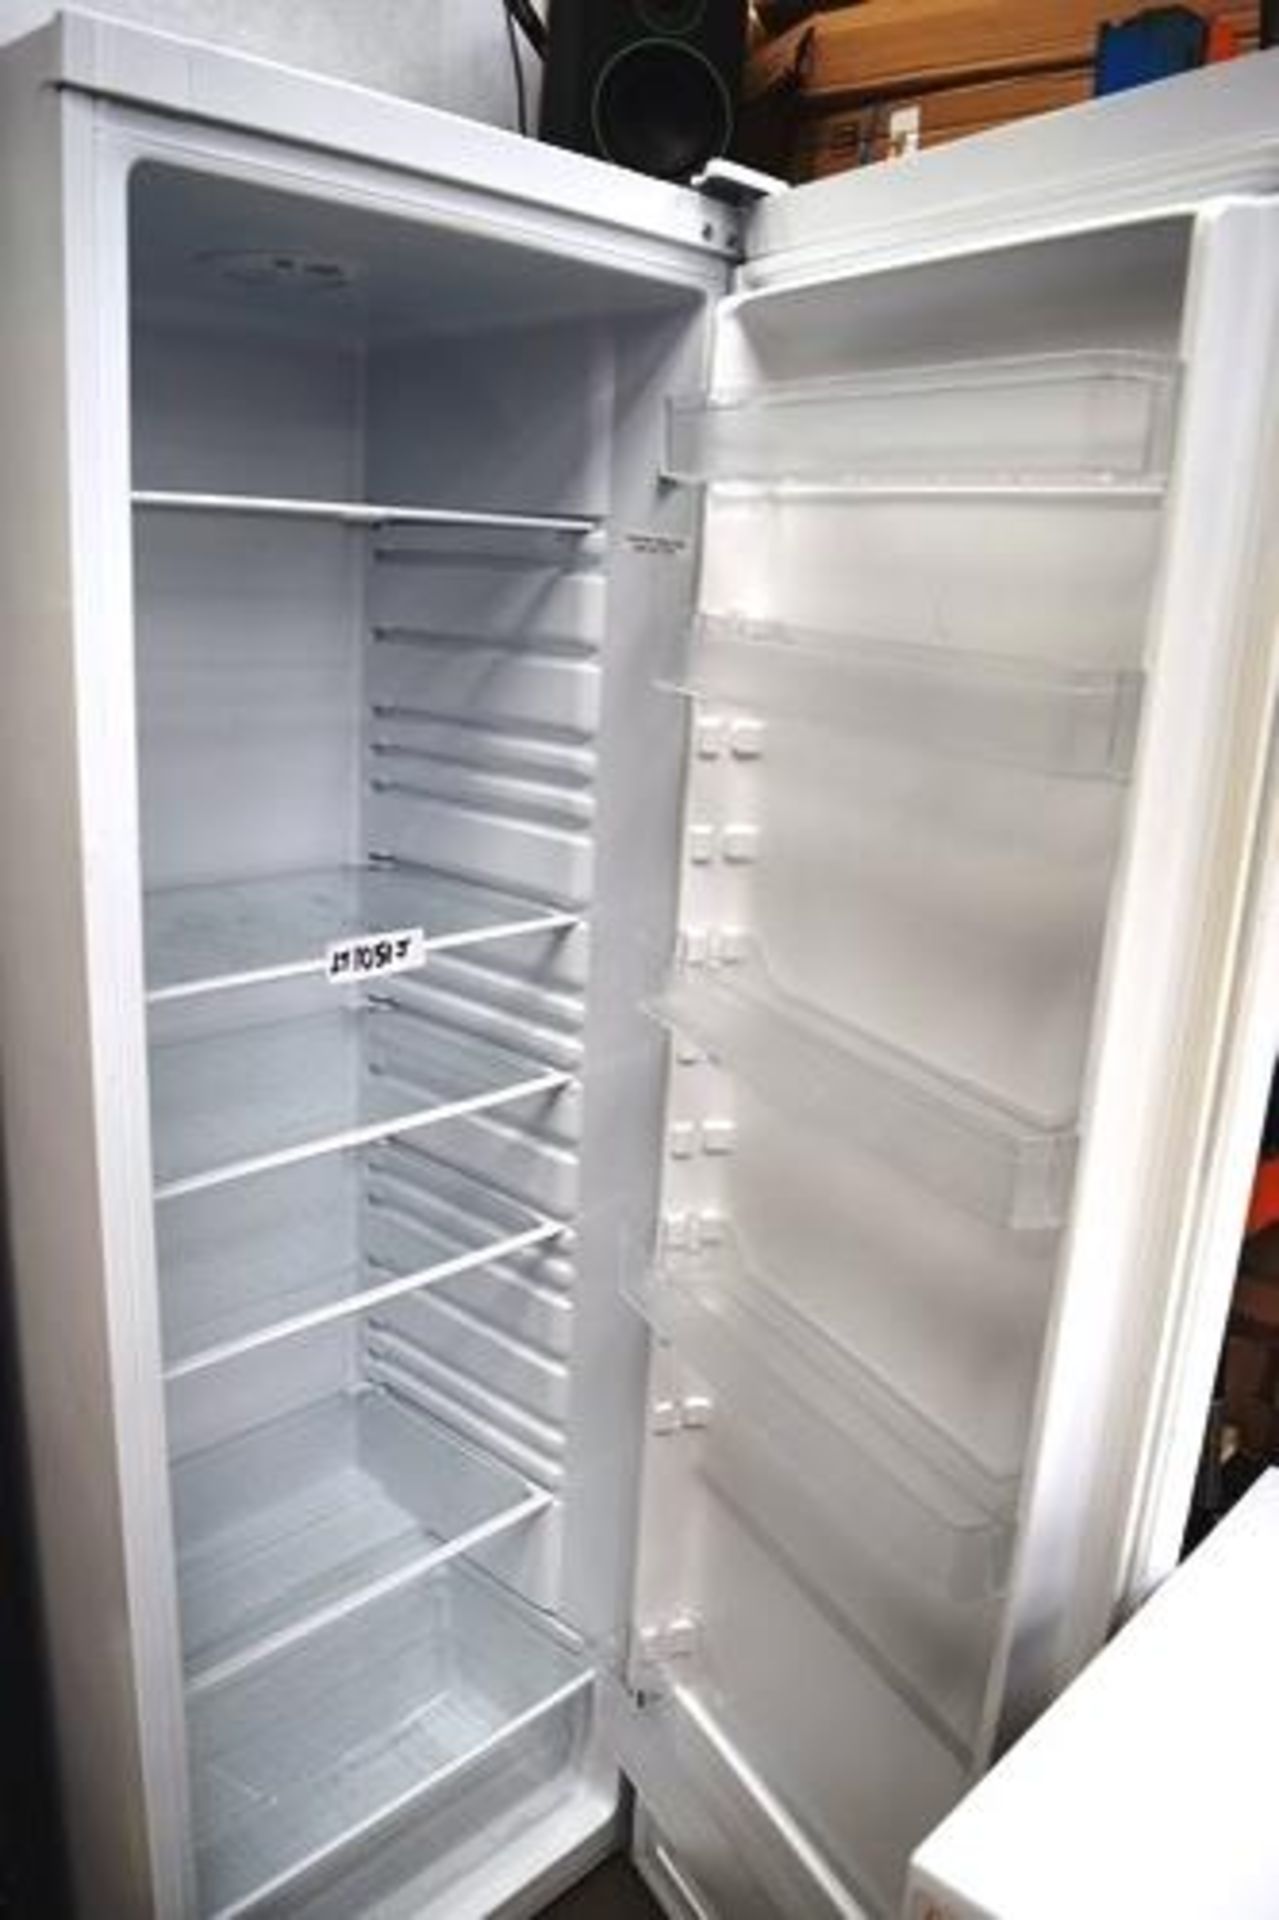 Bush white larder fridge, 240V - Second-hand (GSF) - Image 2 of 2